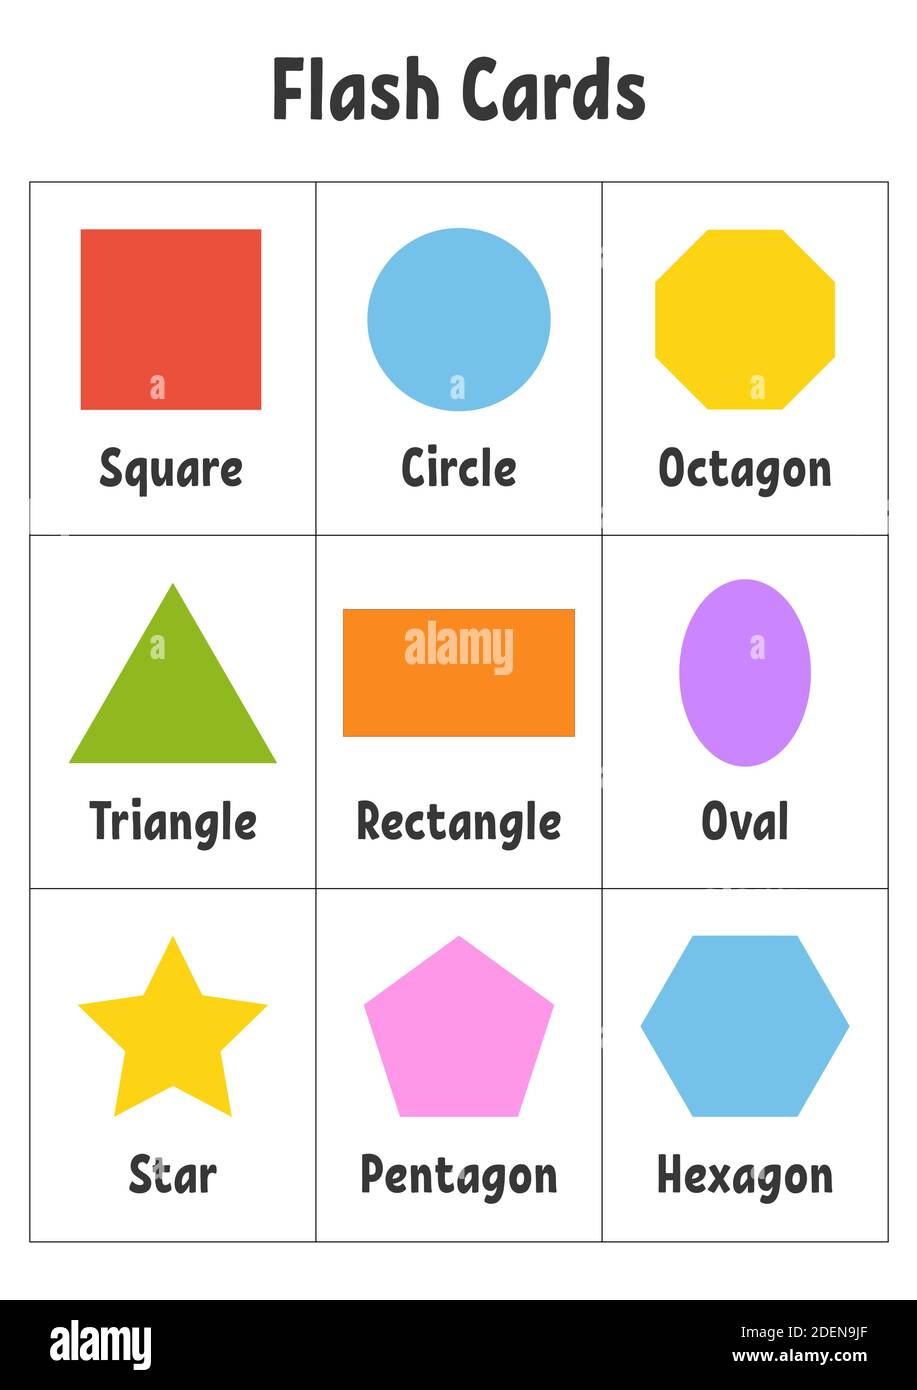 https://c8.alamy.com/comp/2DEN9JF/flash-cards-learning-shapes-education-developing-worksheet-activity-page-for-kids-color-game-for-children-vector-illustration-2DEN9JF.jpg